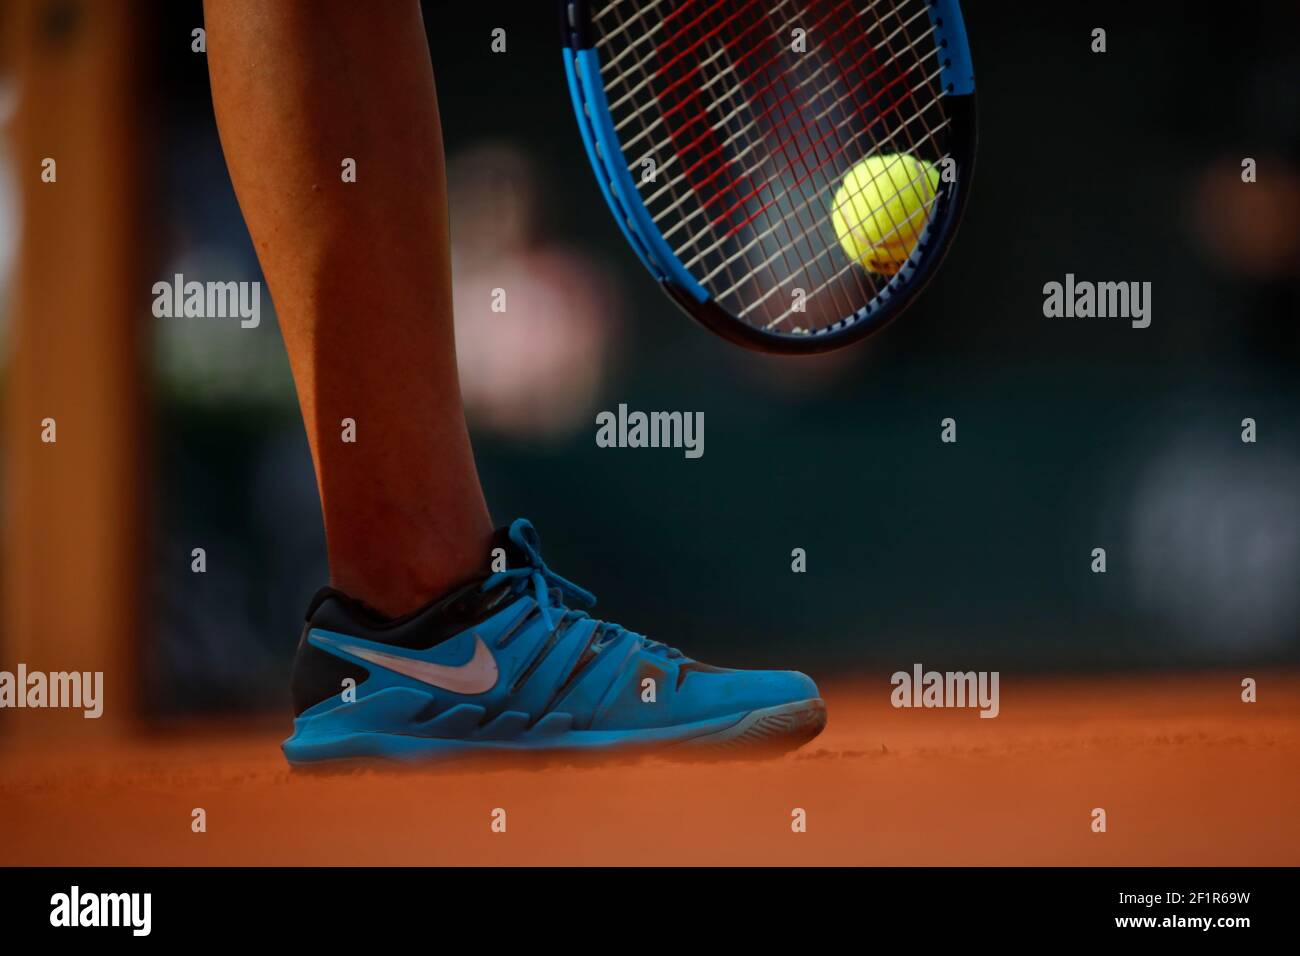 Ilustración de zapatillas Nike, raqueta Wilson y pelota de tenis de Madison  KEYS (EE.UU.) en servicio durante el Abierto de Tenis Francés Roland Garros  2018, día 12, el 7 de junio de